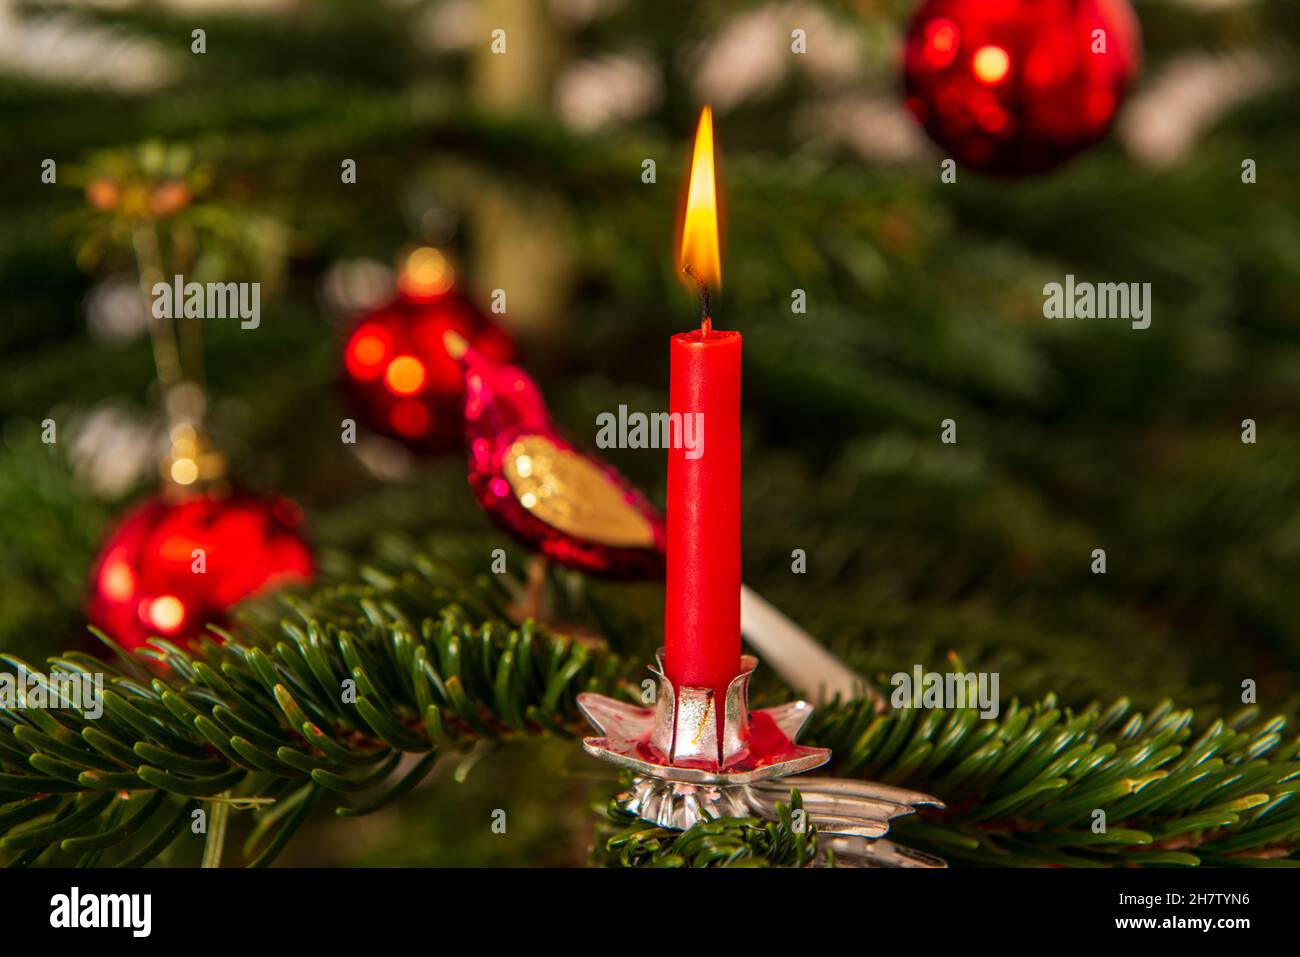 Rote brennende Weihnachtskerze an einem Weihnachtsbaum Stock Photo